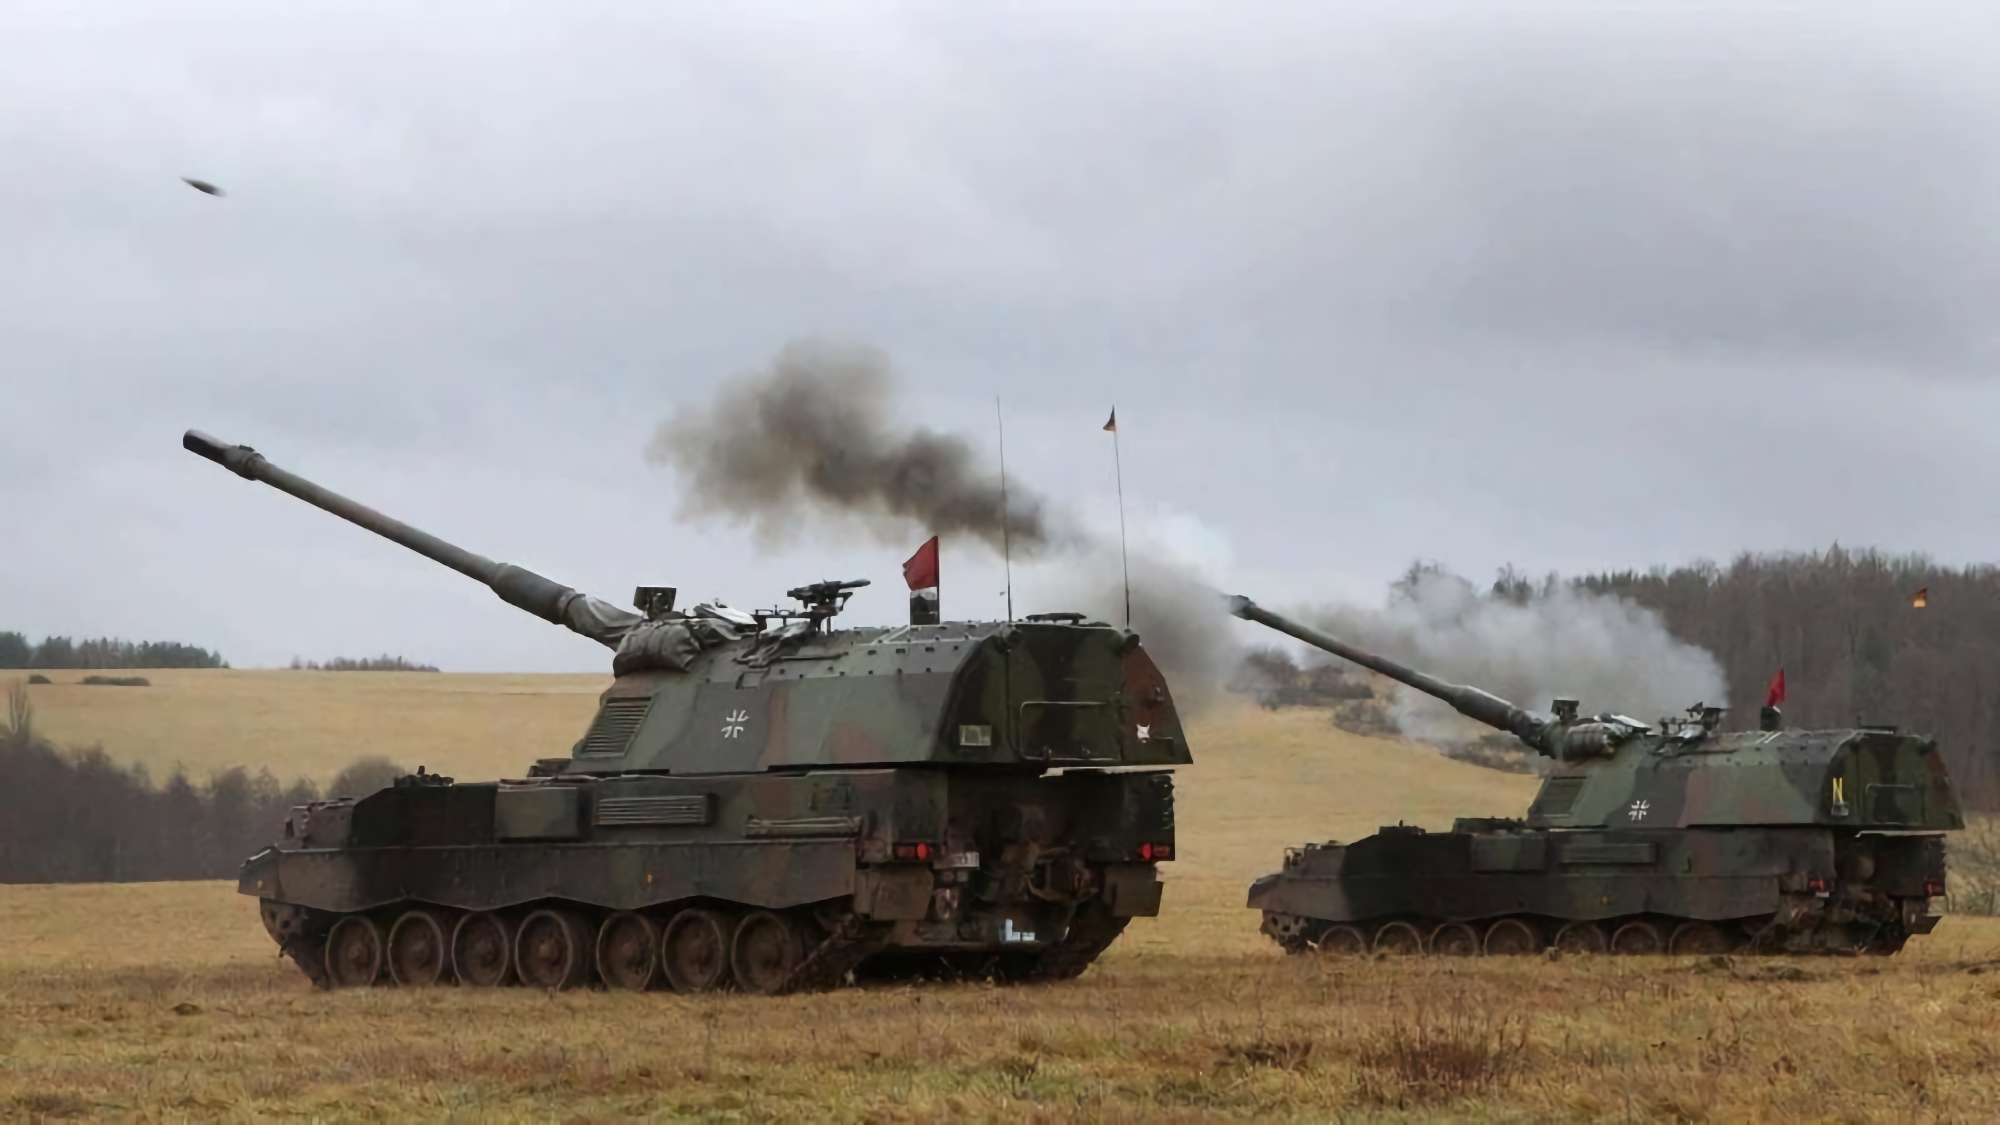 Ukrainian Armed Forces Confirmed Receipt of SMArt Self-Directed Shells for Panzerhaubitze 2000 Howitzers